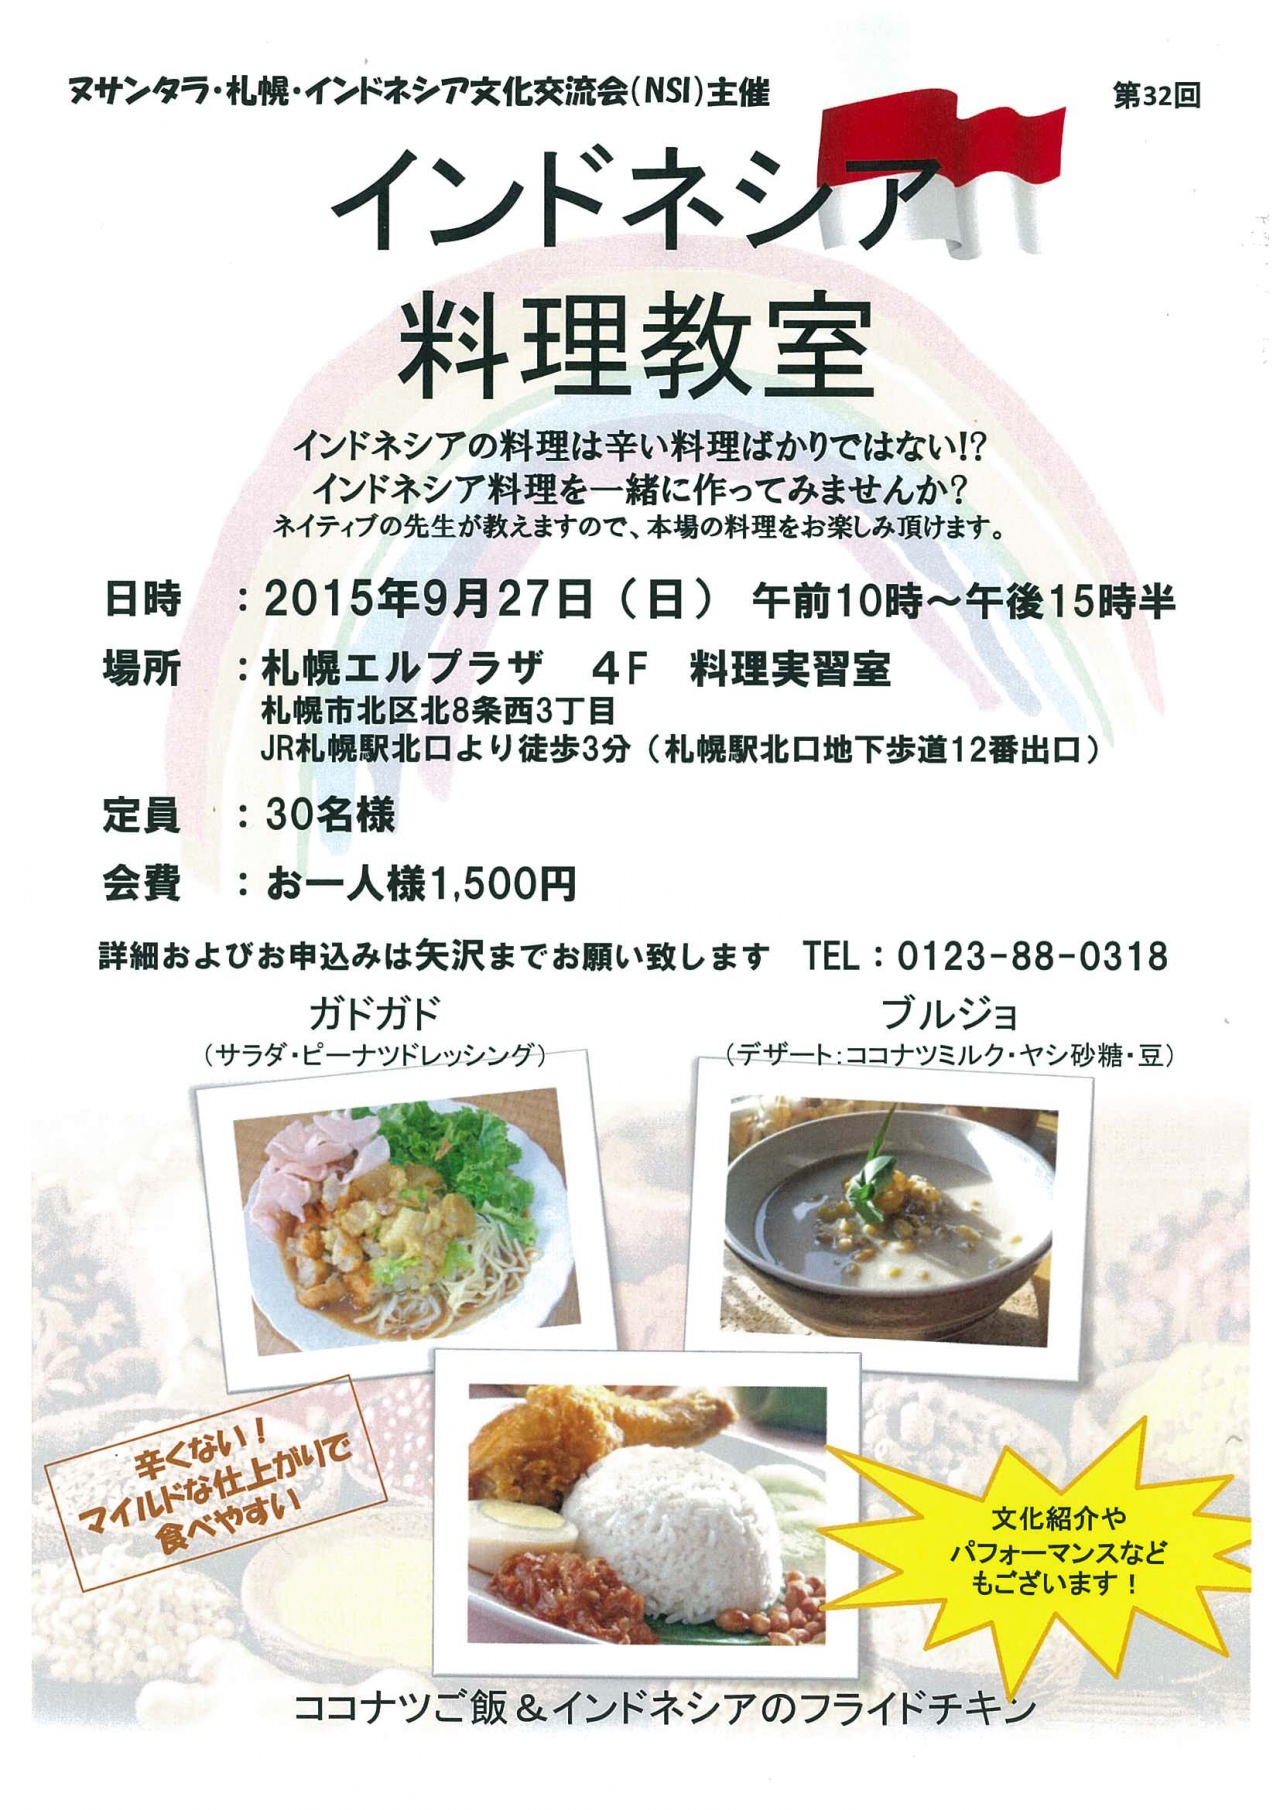 インドネシア料理教室のチラシ ブログ ヌサンタラ 札幌インドネシア文化交流会